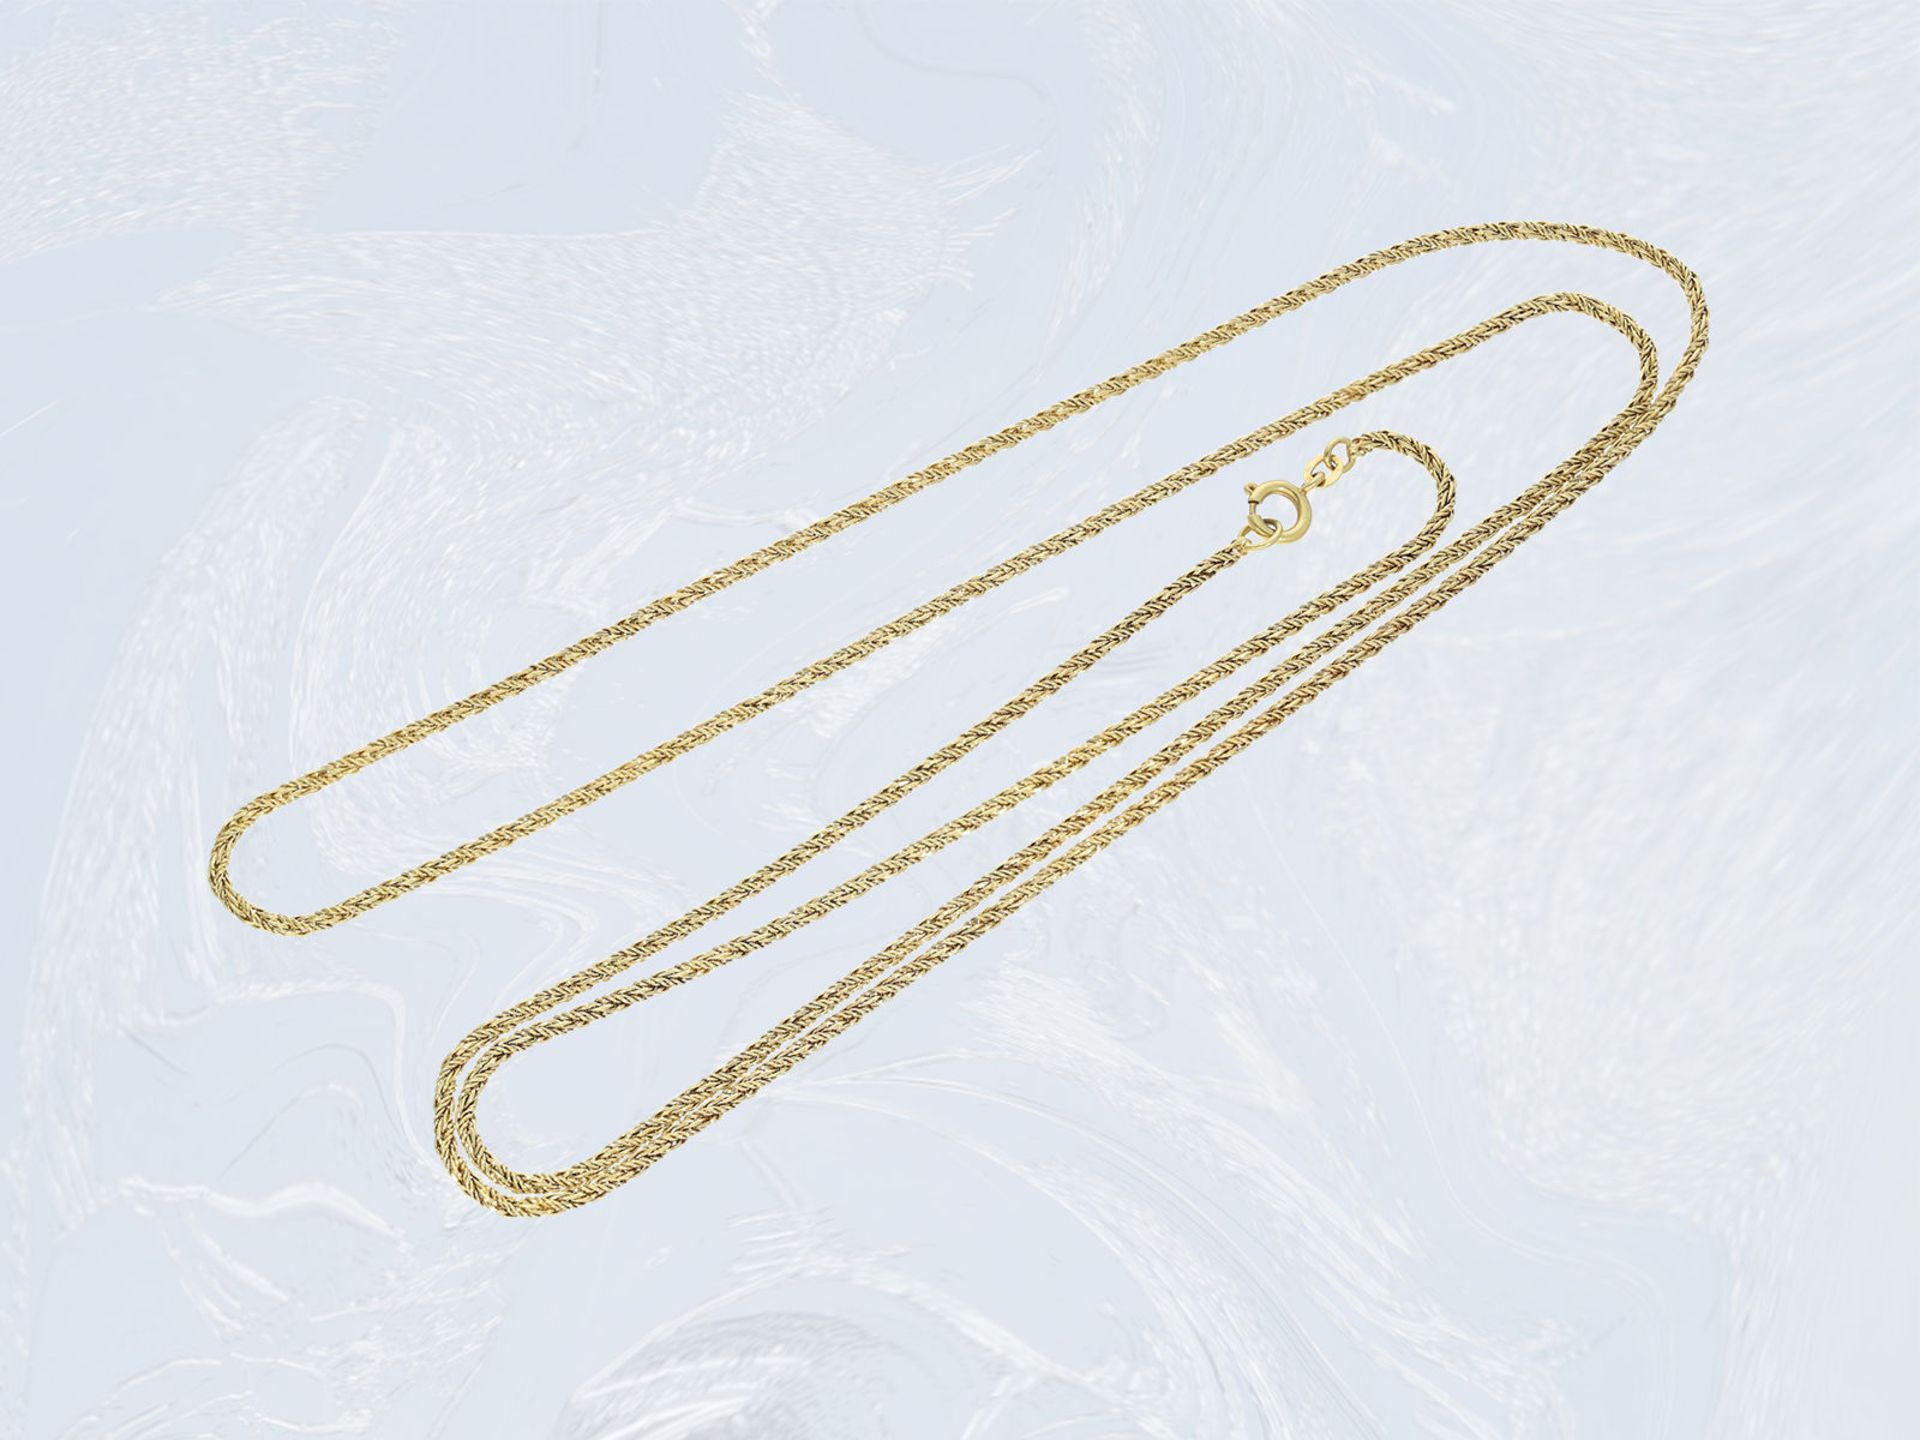 Kette/Collier: ungetragene, lange 14K Goldkette im ZopfmusterCa. 80cm lang, ca. 12g, 14k Gelbgold, - Bild 2 aus 2